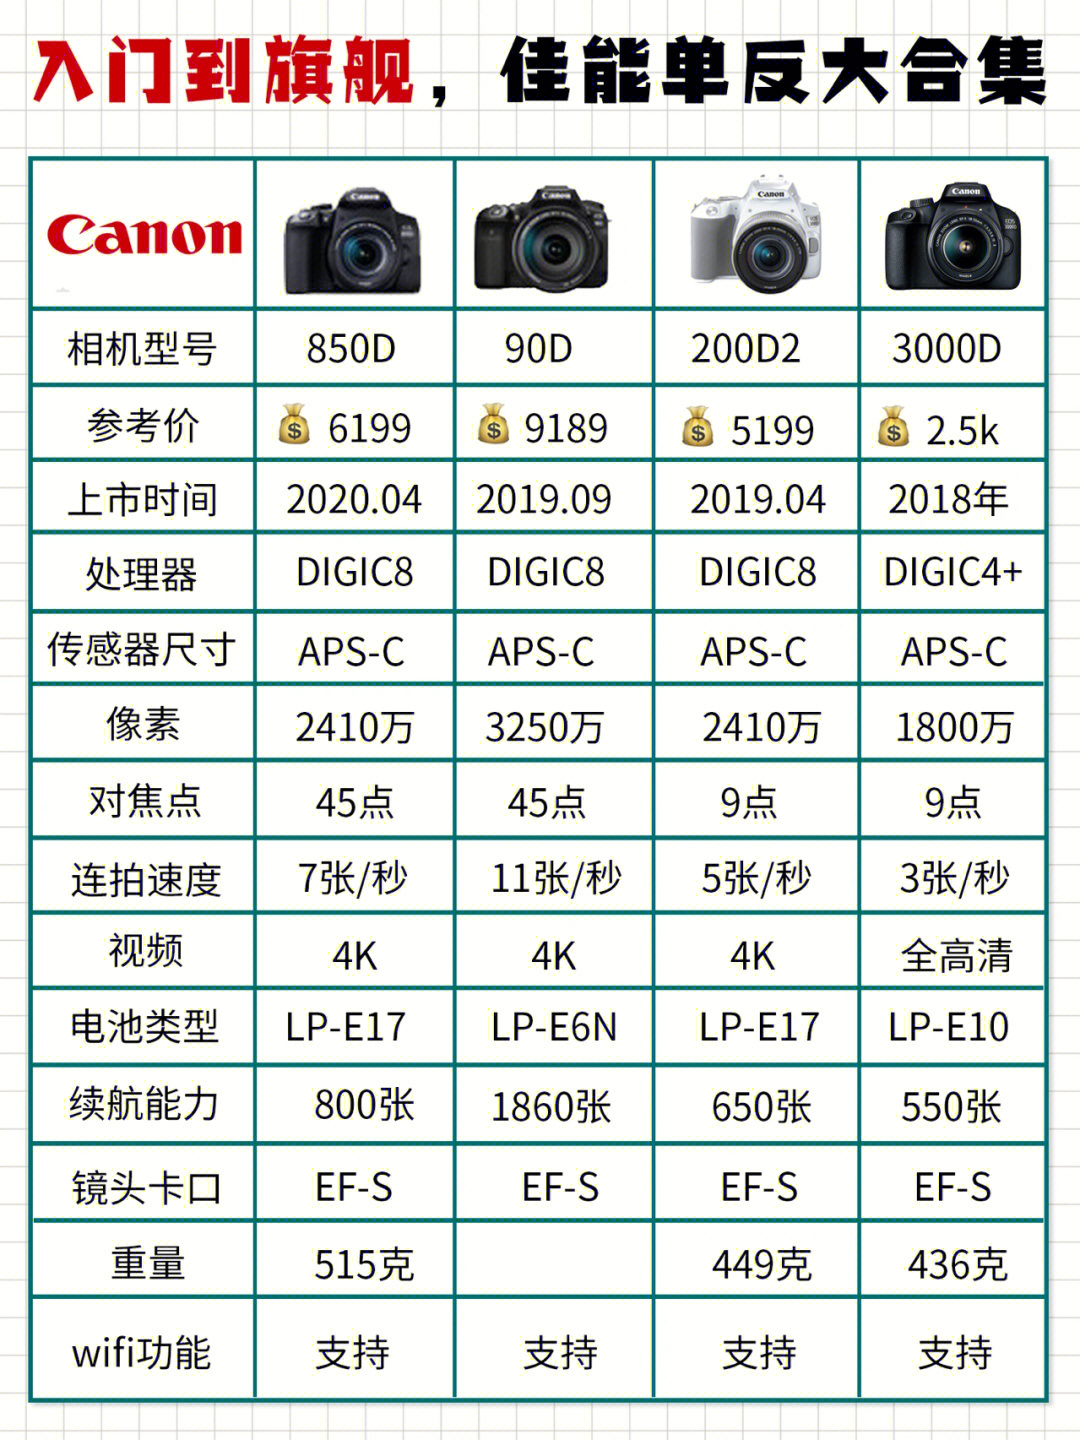 73佳能单反相机型号:11566全画幅单反相机:目前有1d,5d和6d系列